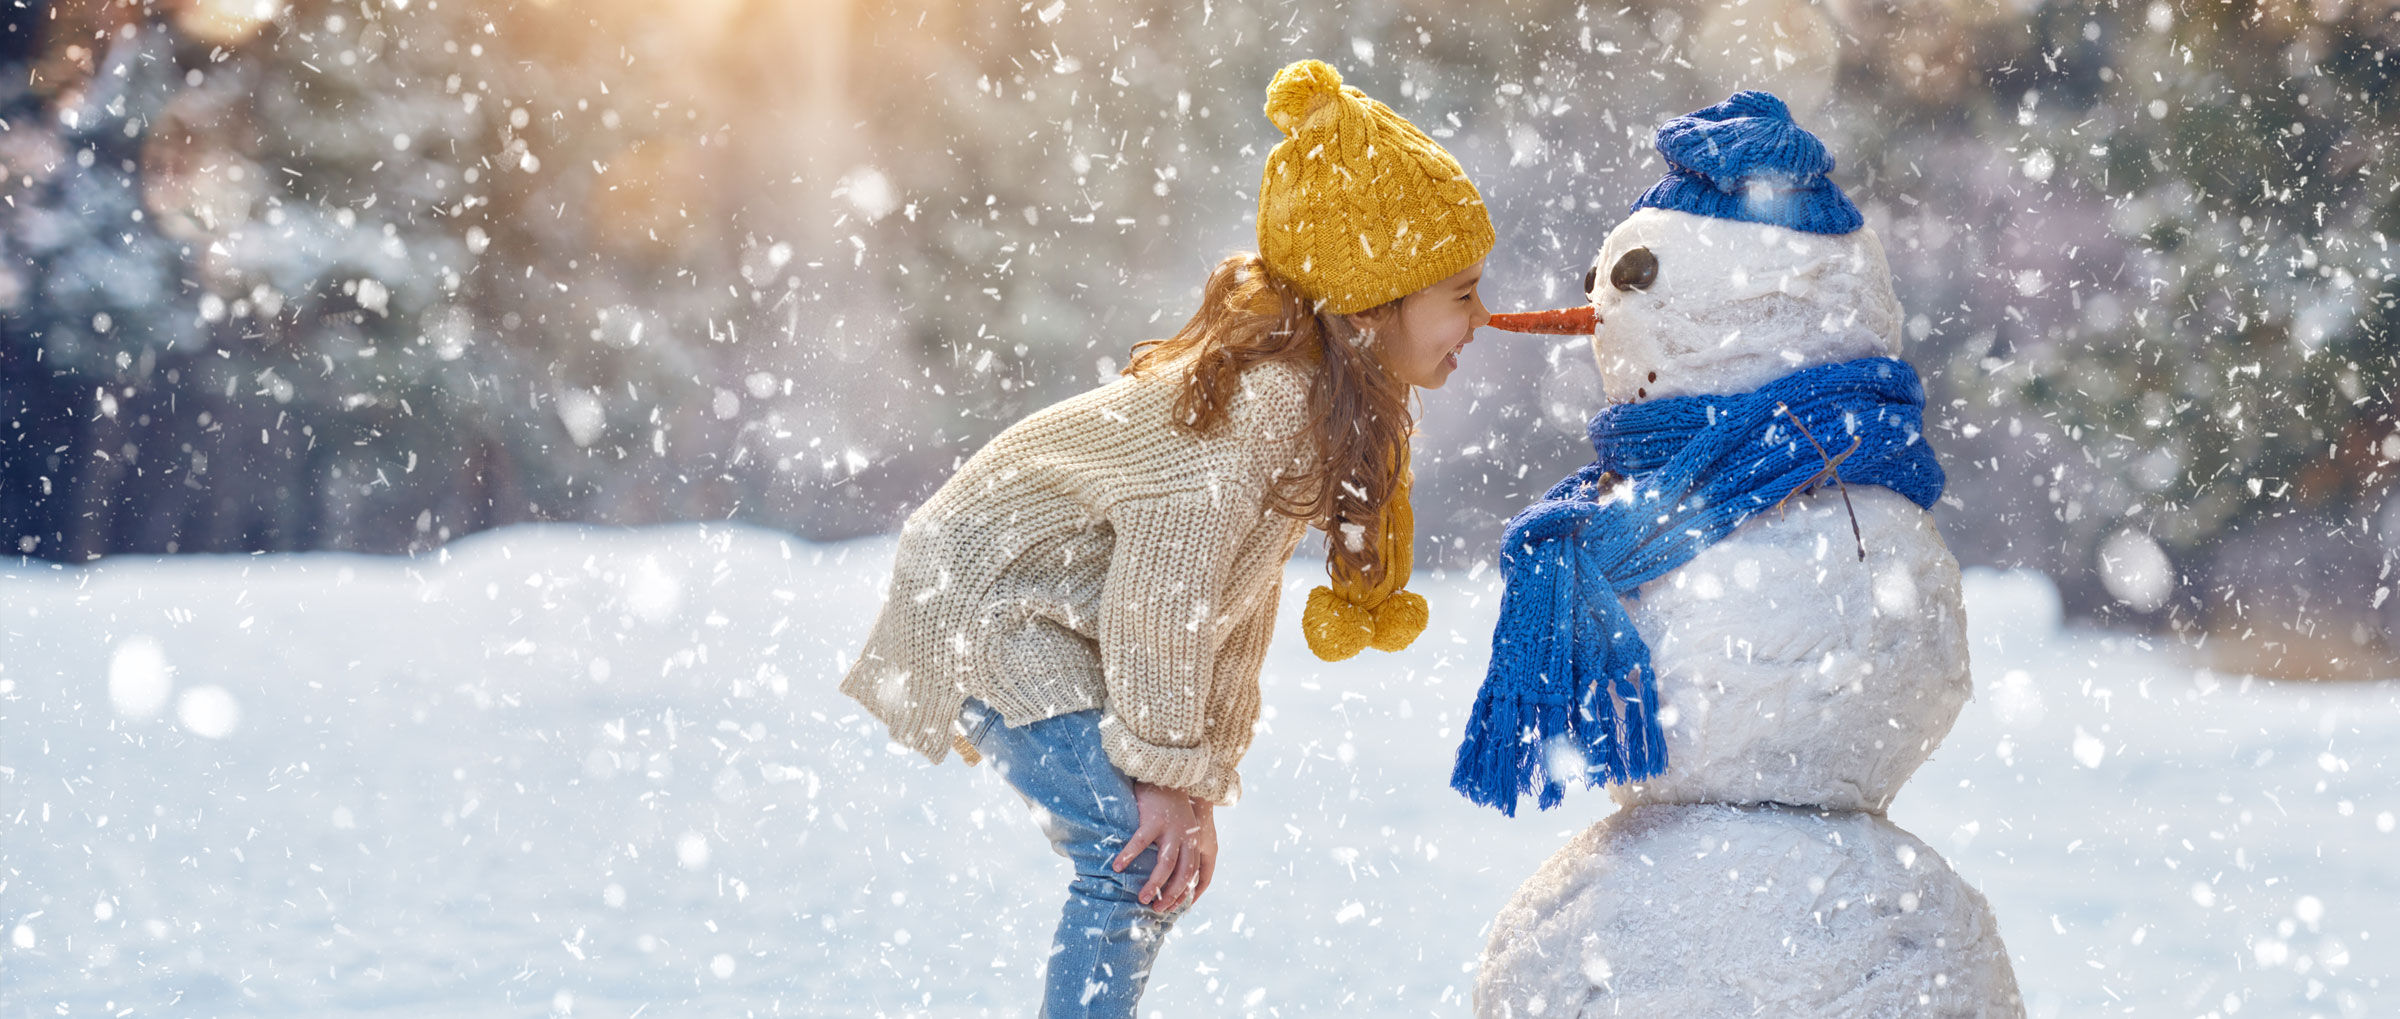 Une fillette portant une tuque et une écharpe jaunes se tient « nez à carotte » avec un bonhomme de neige portant une tuque et une écharpe bleues, tandis qu'il neige autour d'eux.